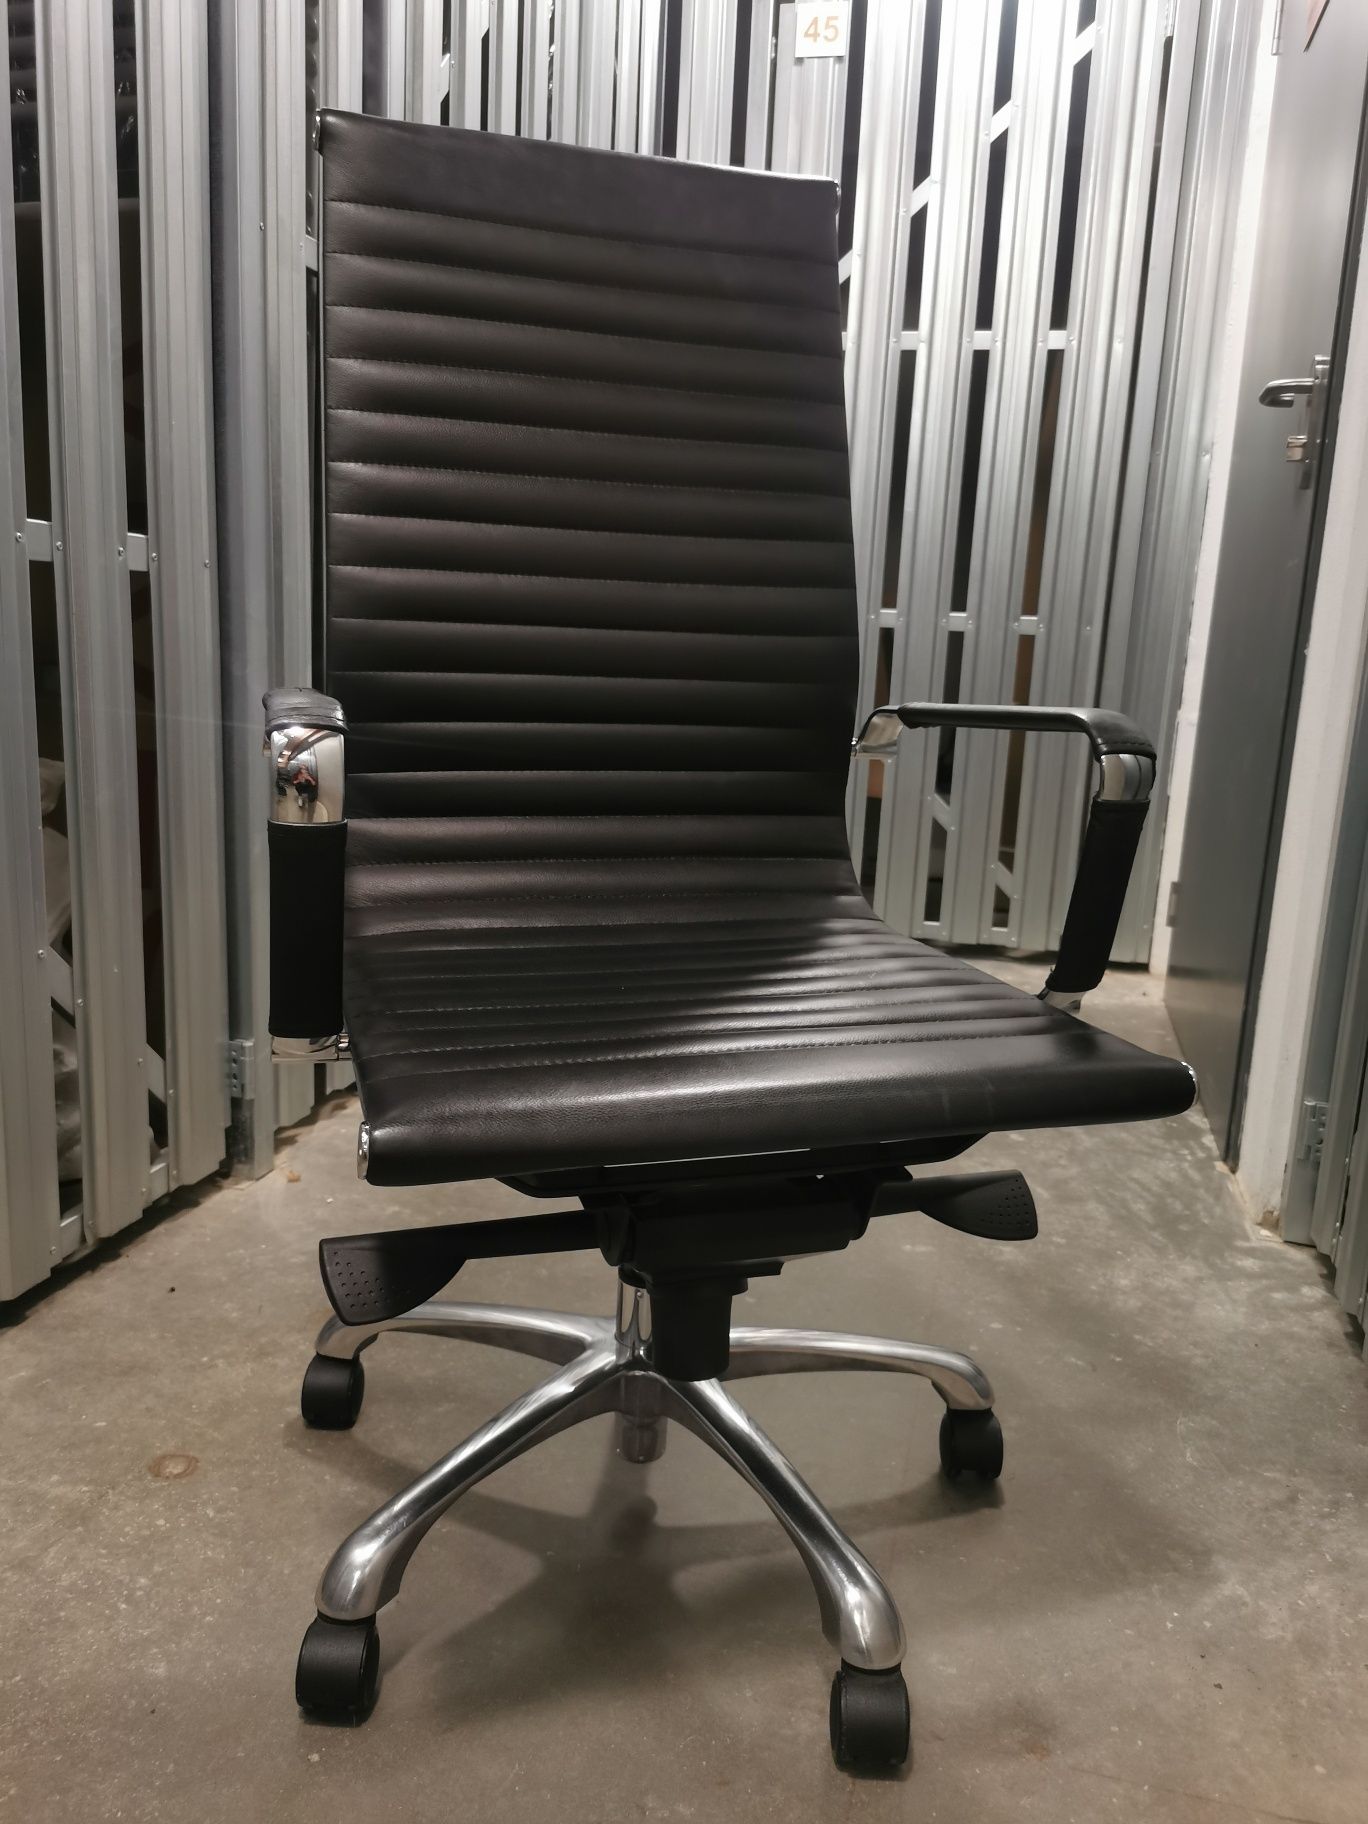 Fotel skórzany biurowy krzesło grospol next sn1